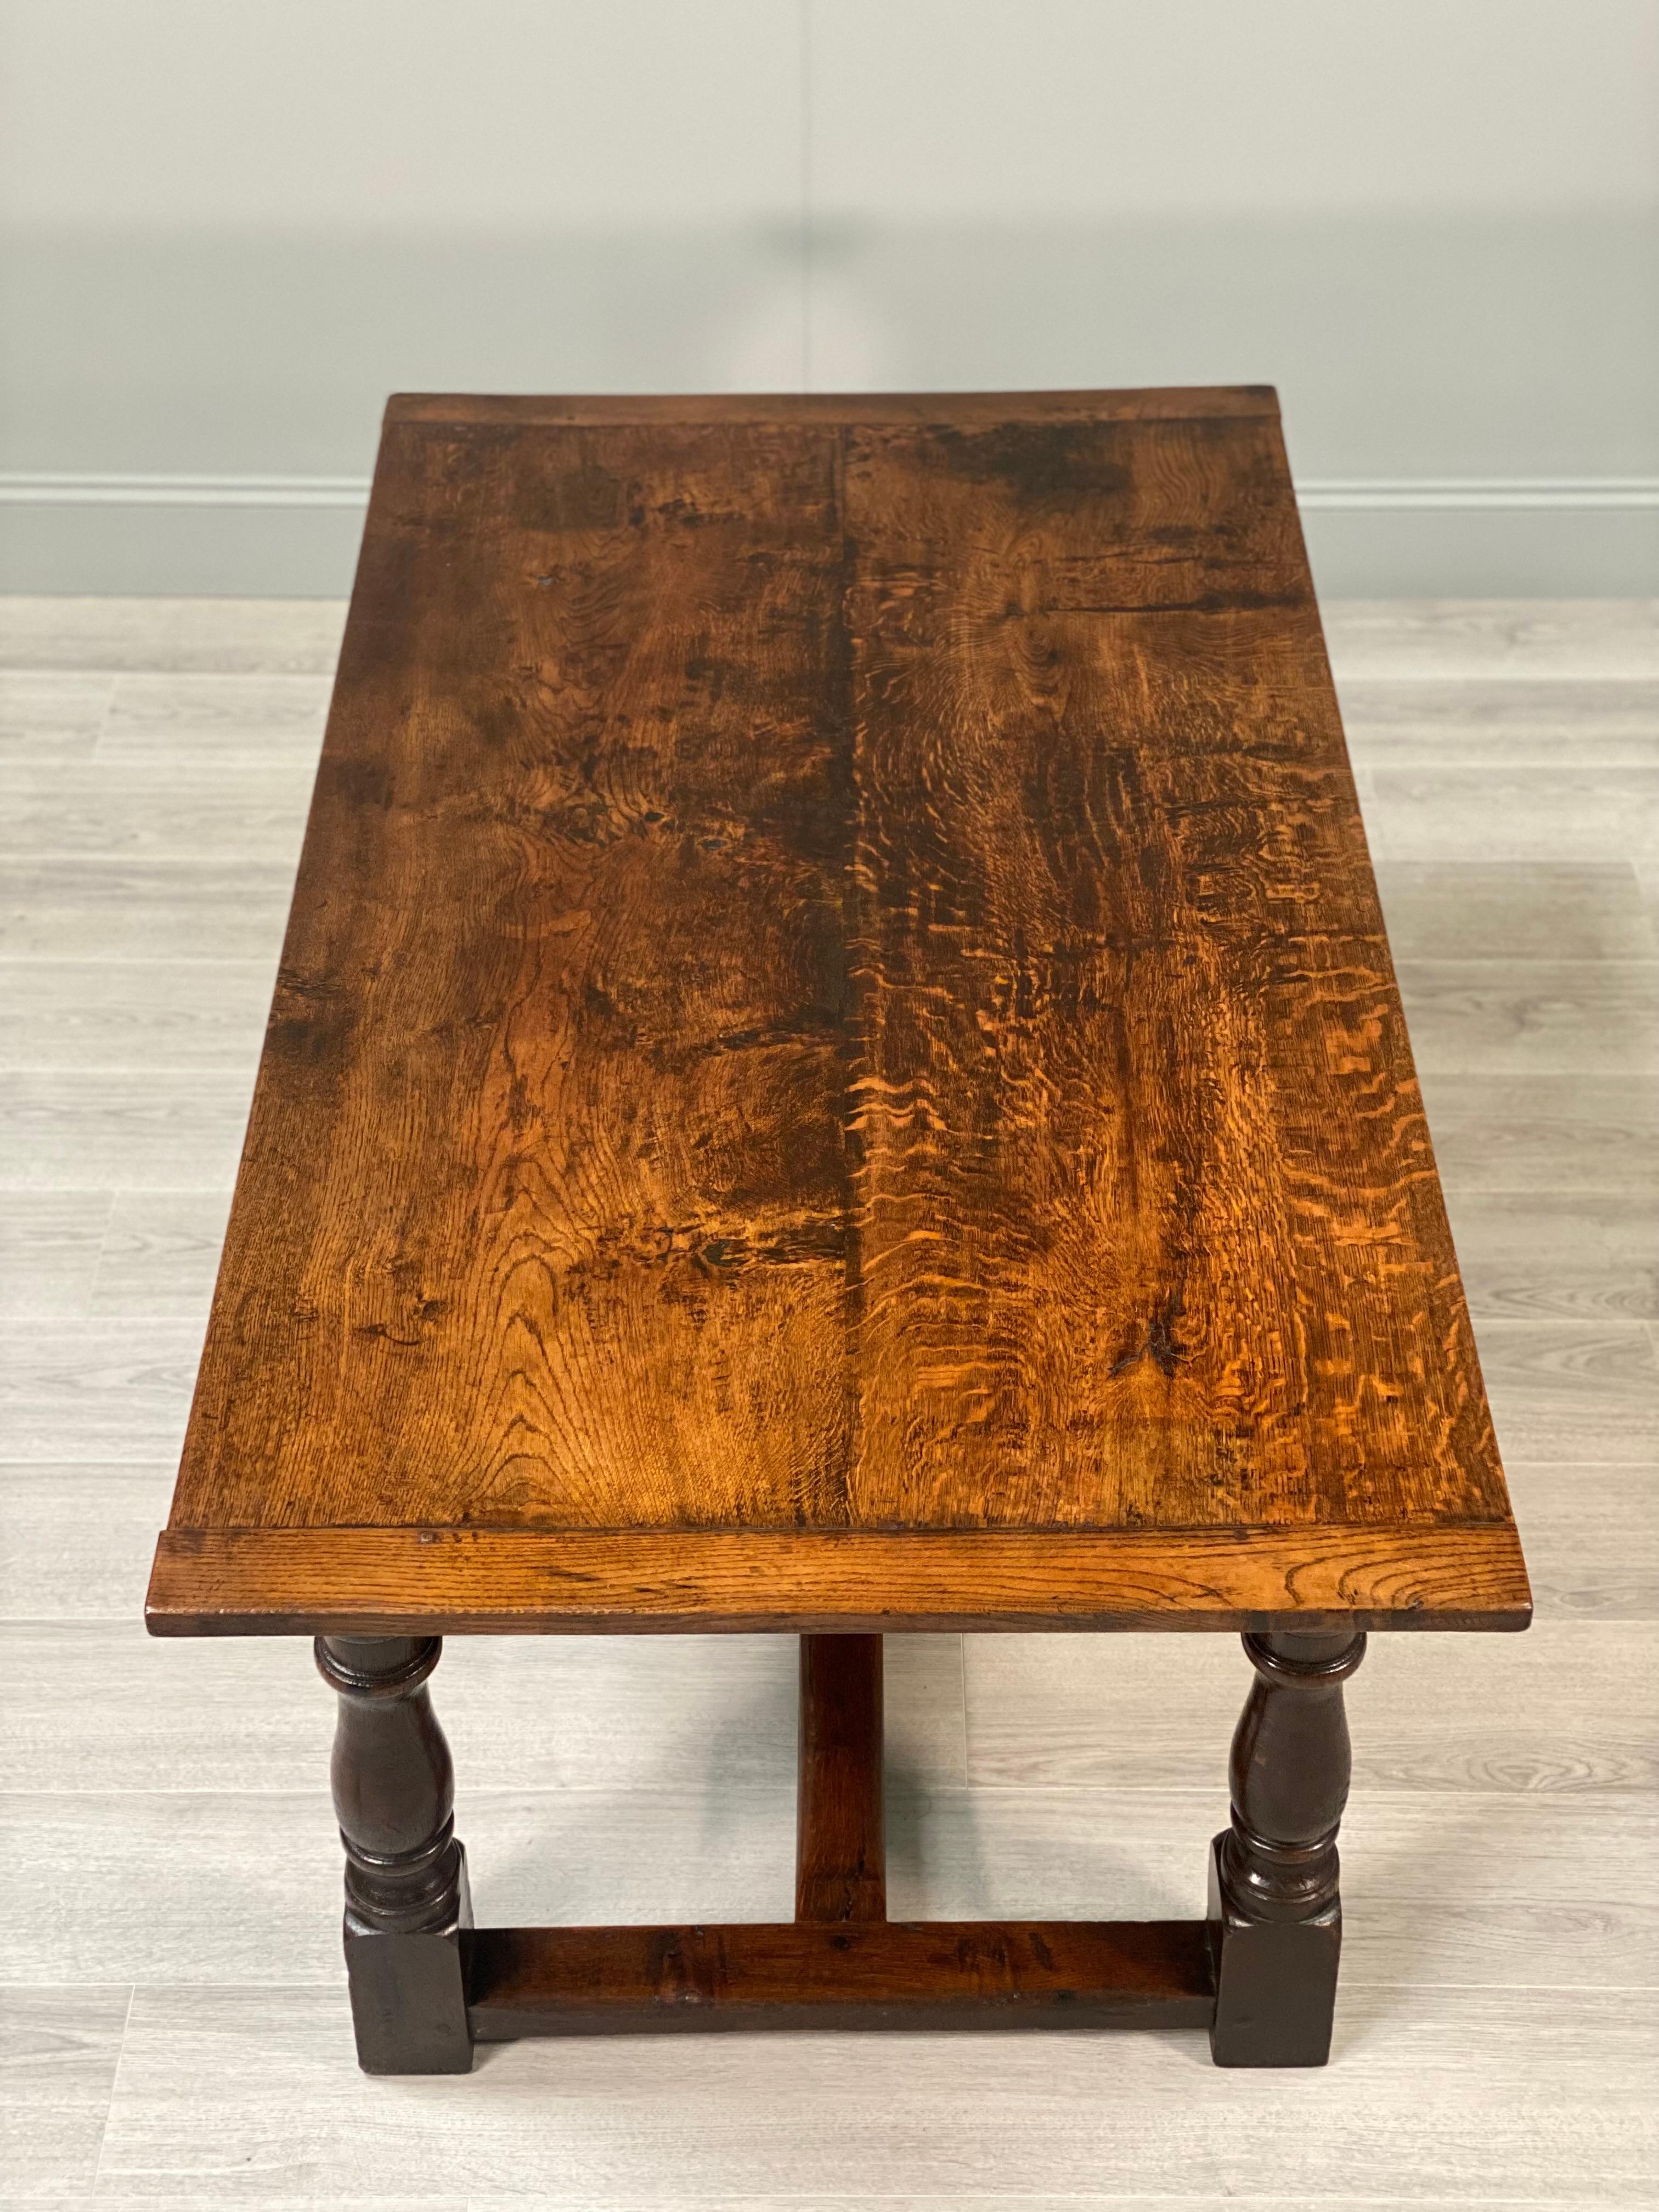 Ein hervorragender Refektoriumstisch aus Eiche, datiert auf ca. 1680. Der Tisch steht auf Kanonenrohrbeinen mit Seiten- und Mittelstreben. Die Platte besteht aus zwei Brettern aus quartiersgesägter Eiche mit Kanten aus Brotbrettern, und für die